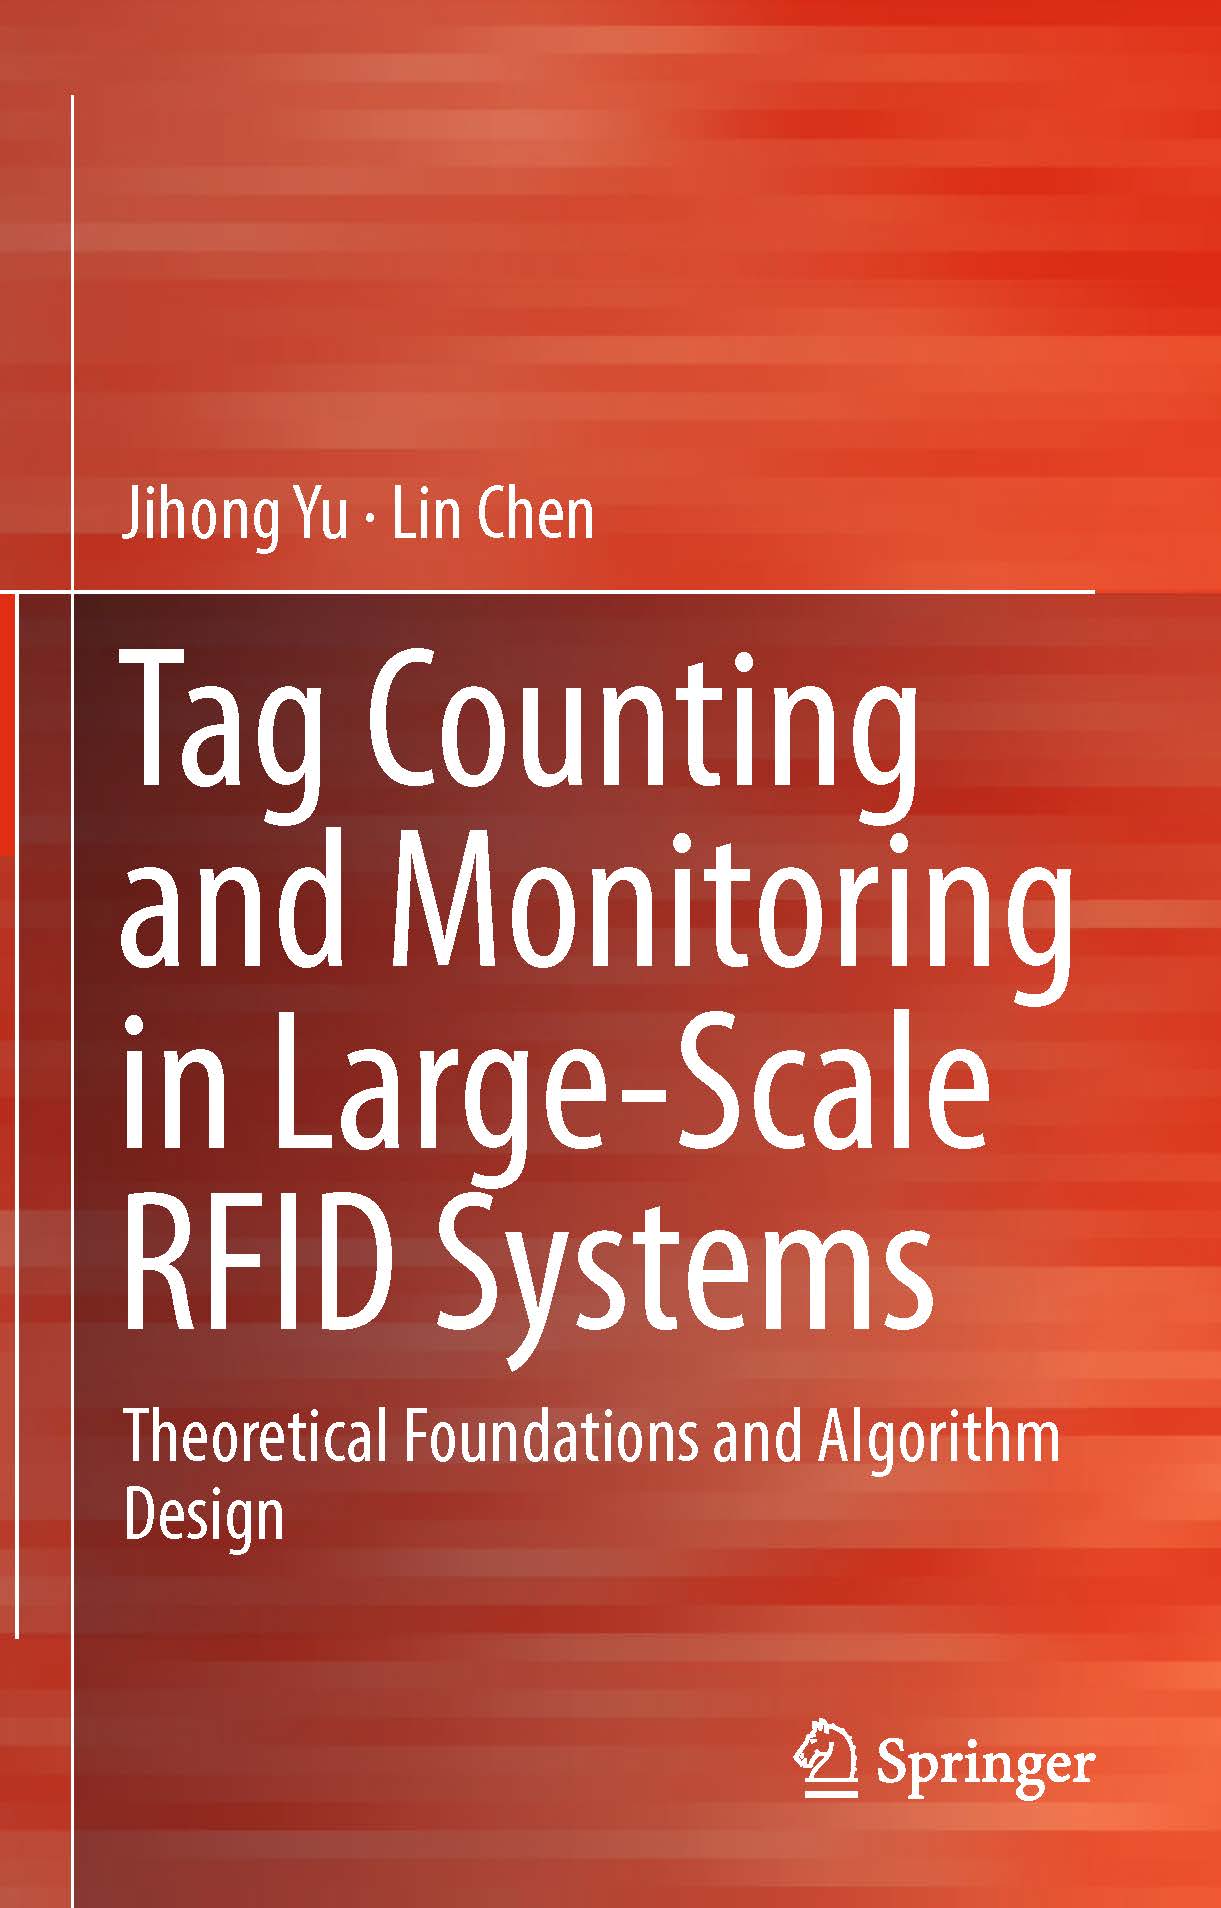 页面提取自－2019_Book_Tag Counting and Monitoring in Large-Scale RFID Systems.jpg